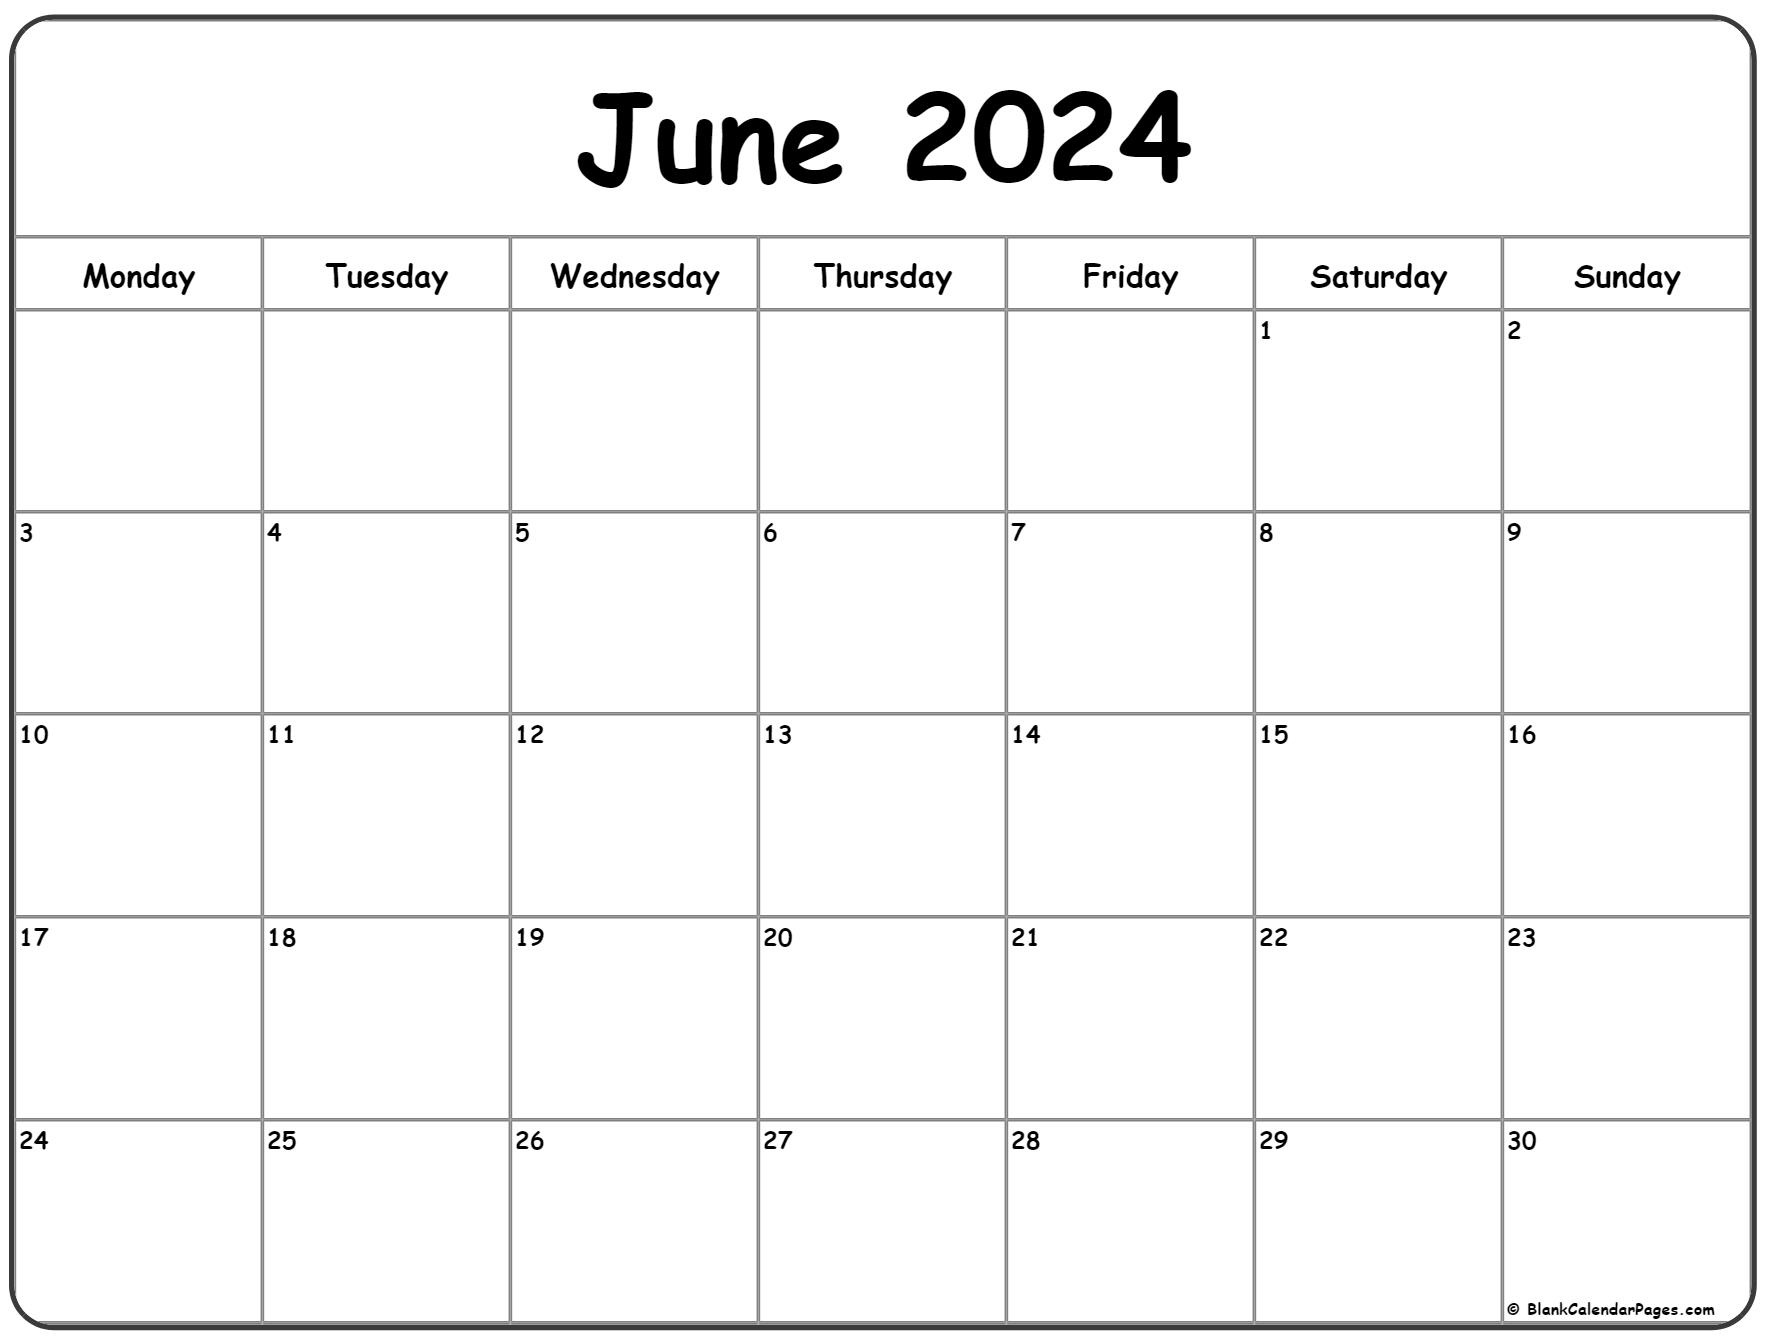 June 2024 Monday Calendar | Monday To Sunday with regard to June 2024 Calendar Image